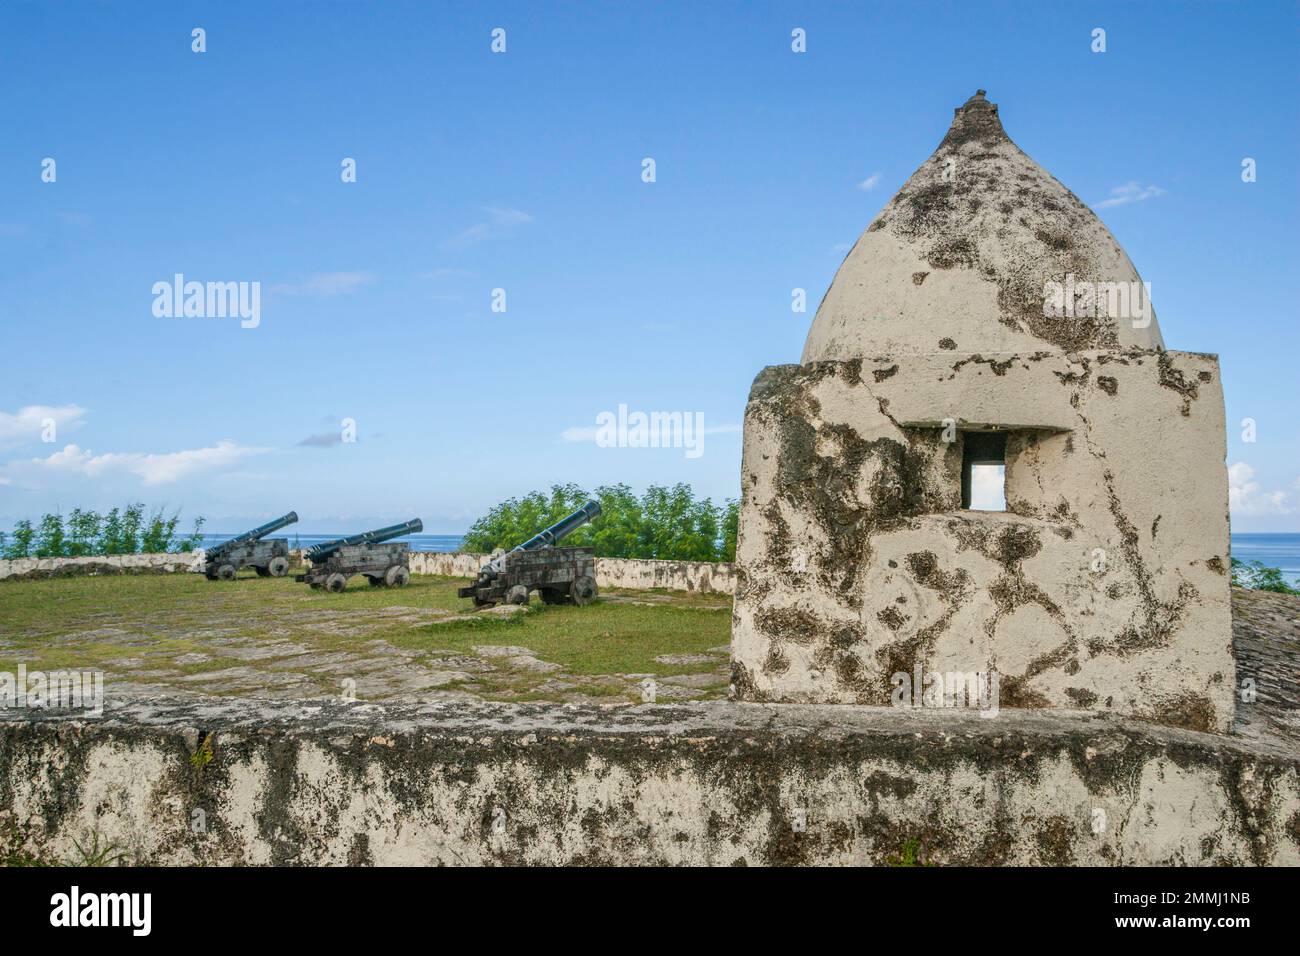 Historisches spanisches Fort Nuestra Senora de la Soledad, auch bekannt als Fort Soledad, erbaut 1800er in der Nähe von Umatac Beach, Guam Island, US Territory, Central Pacific. Stockfoto